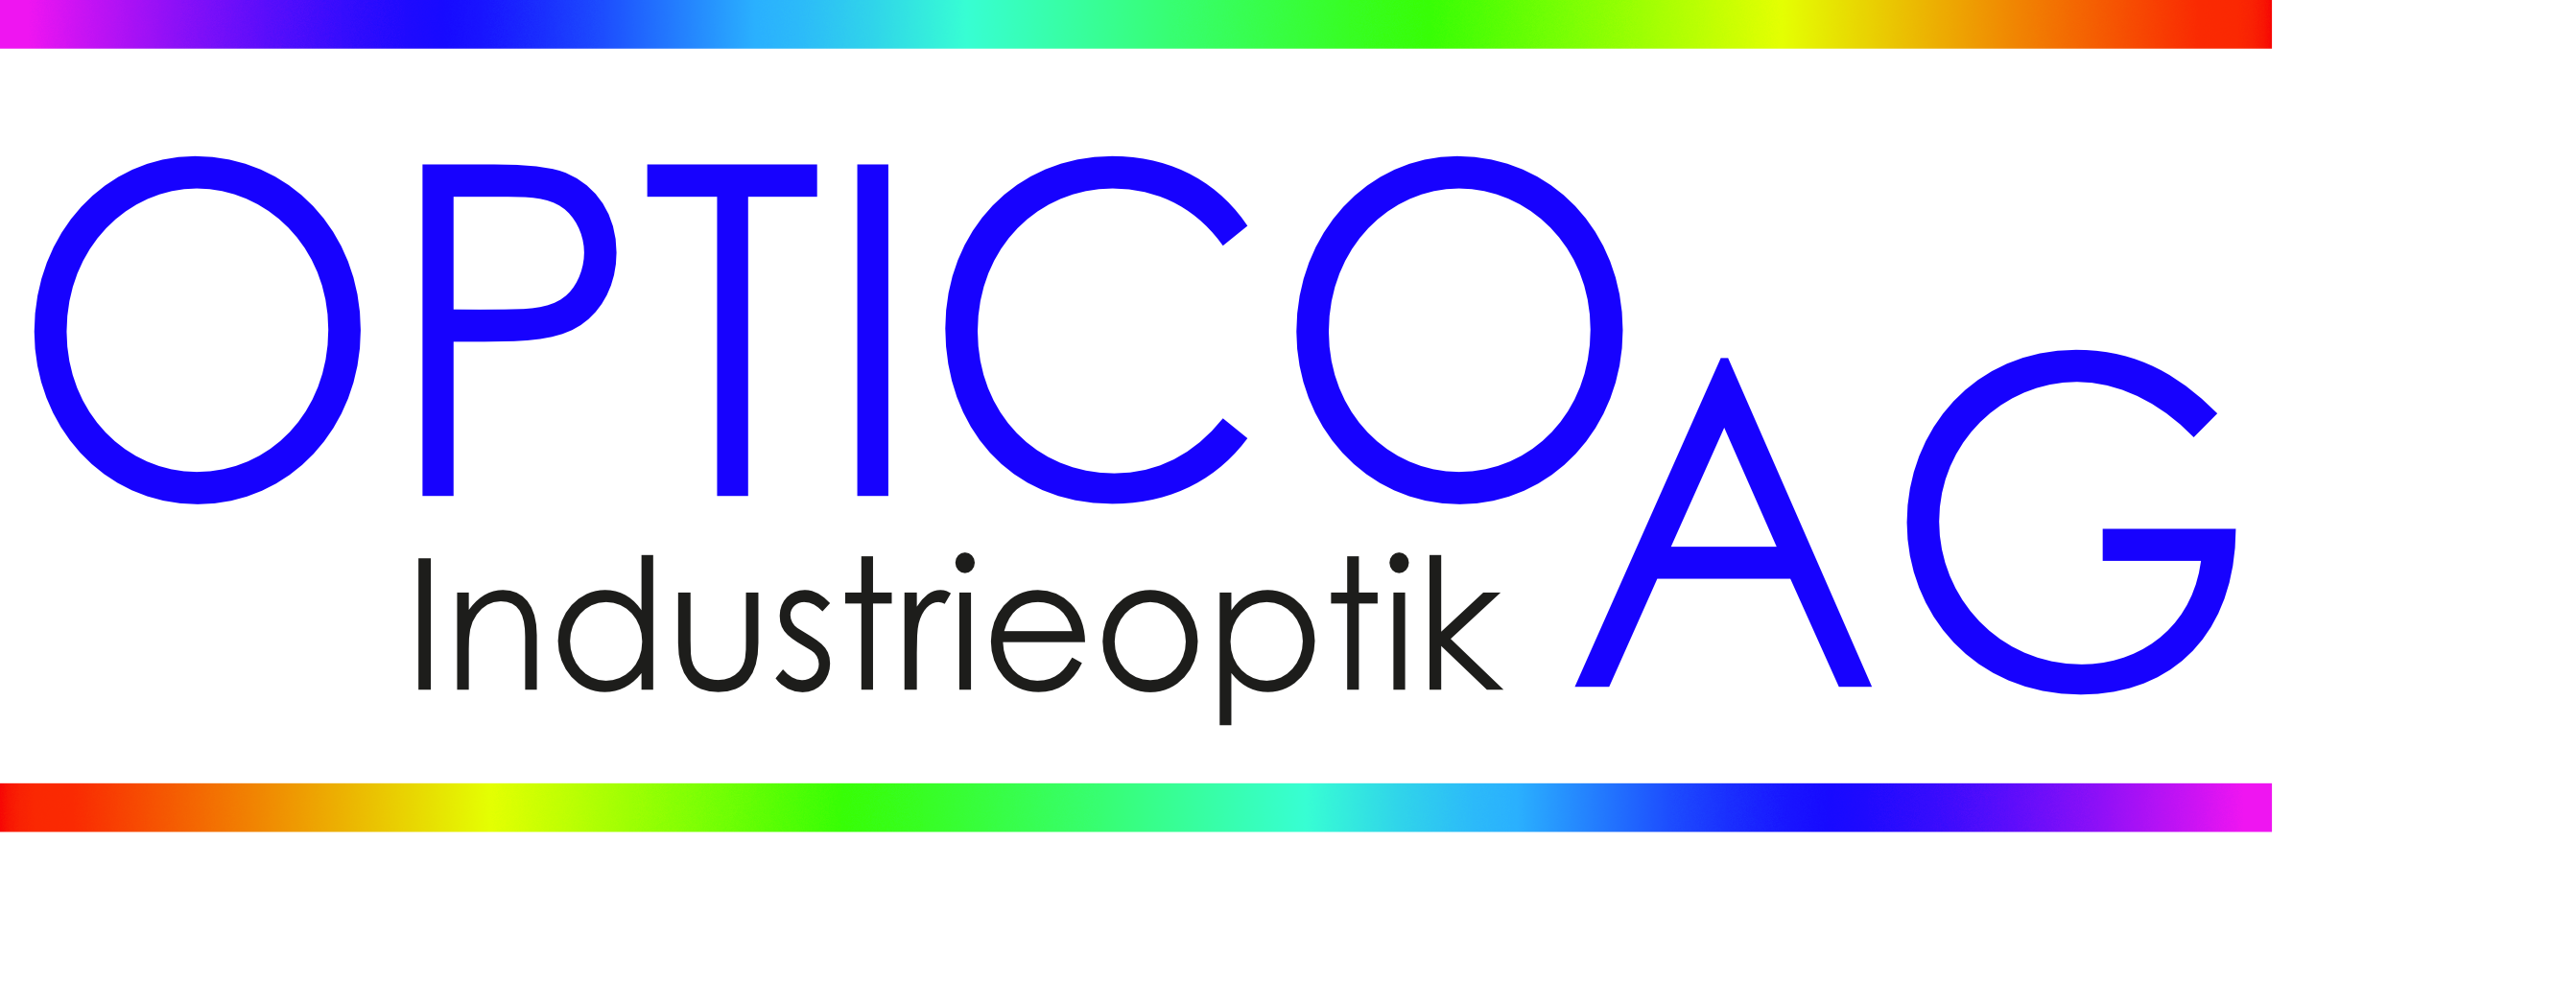 Optico AG Industrieoptik 